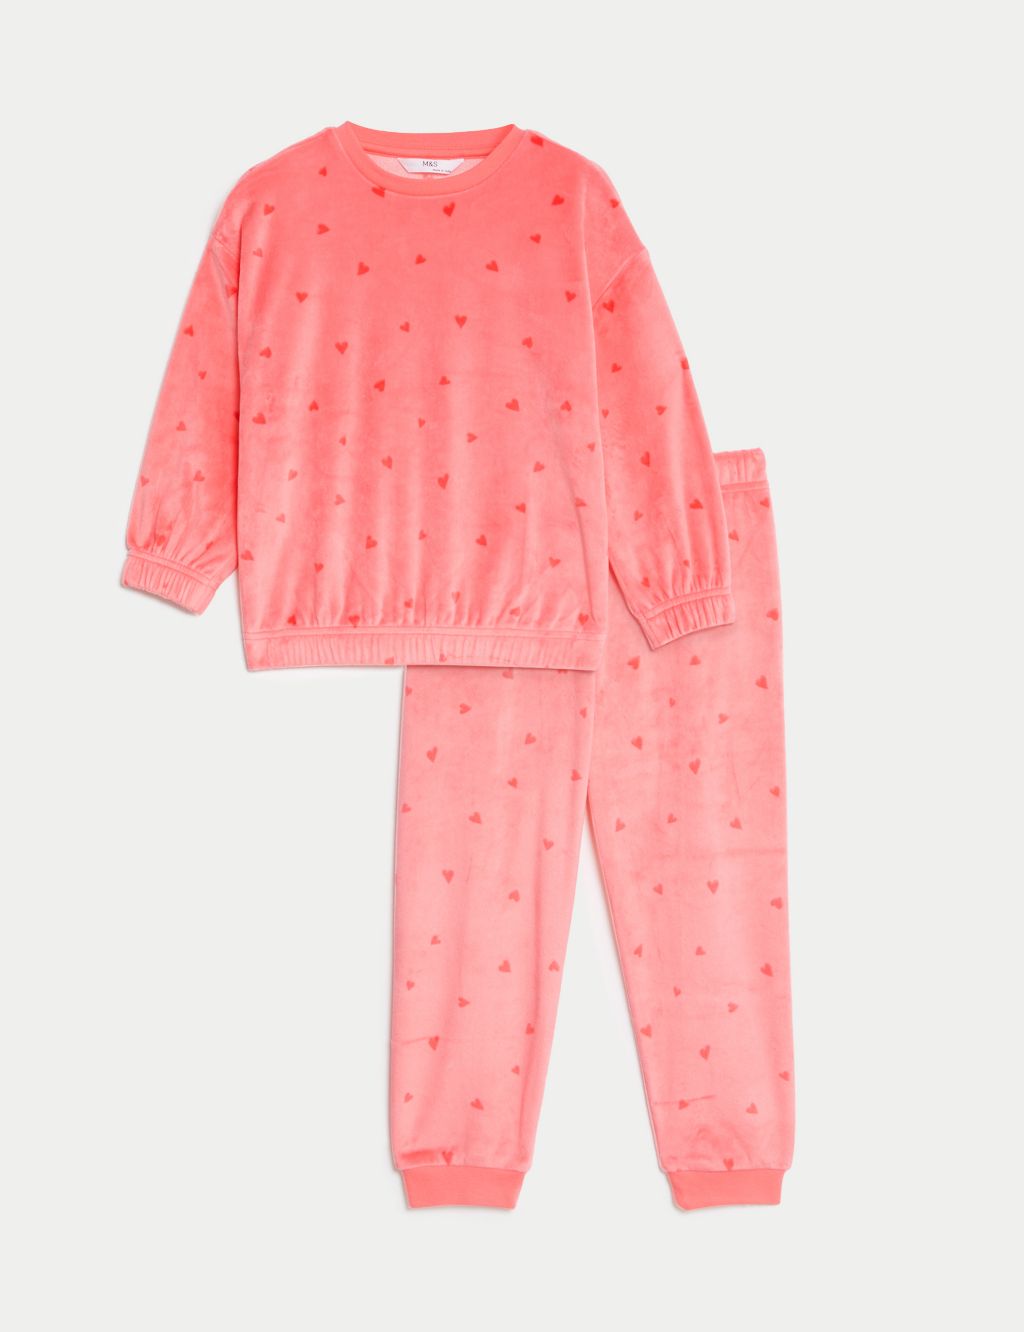 Velour Heart Pyjamas (1-8 Yrs) image 2